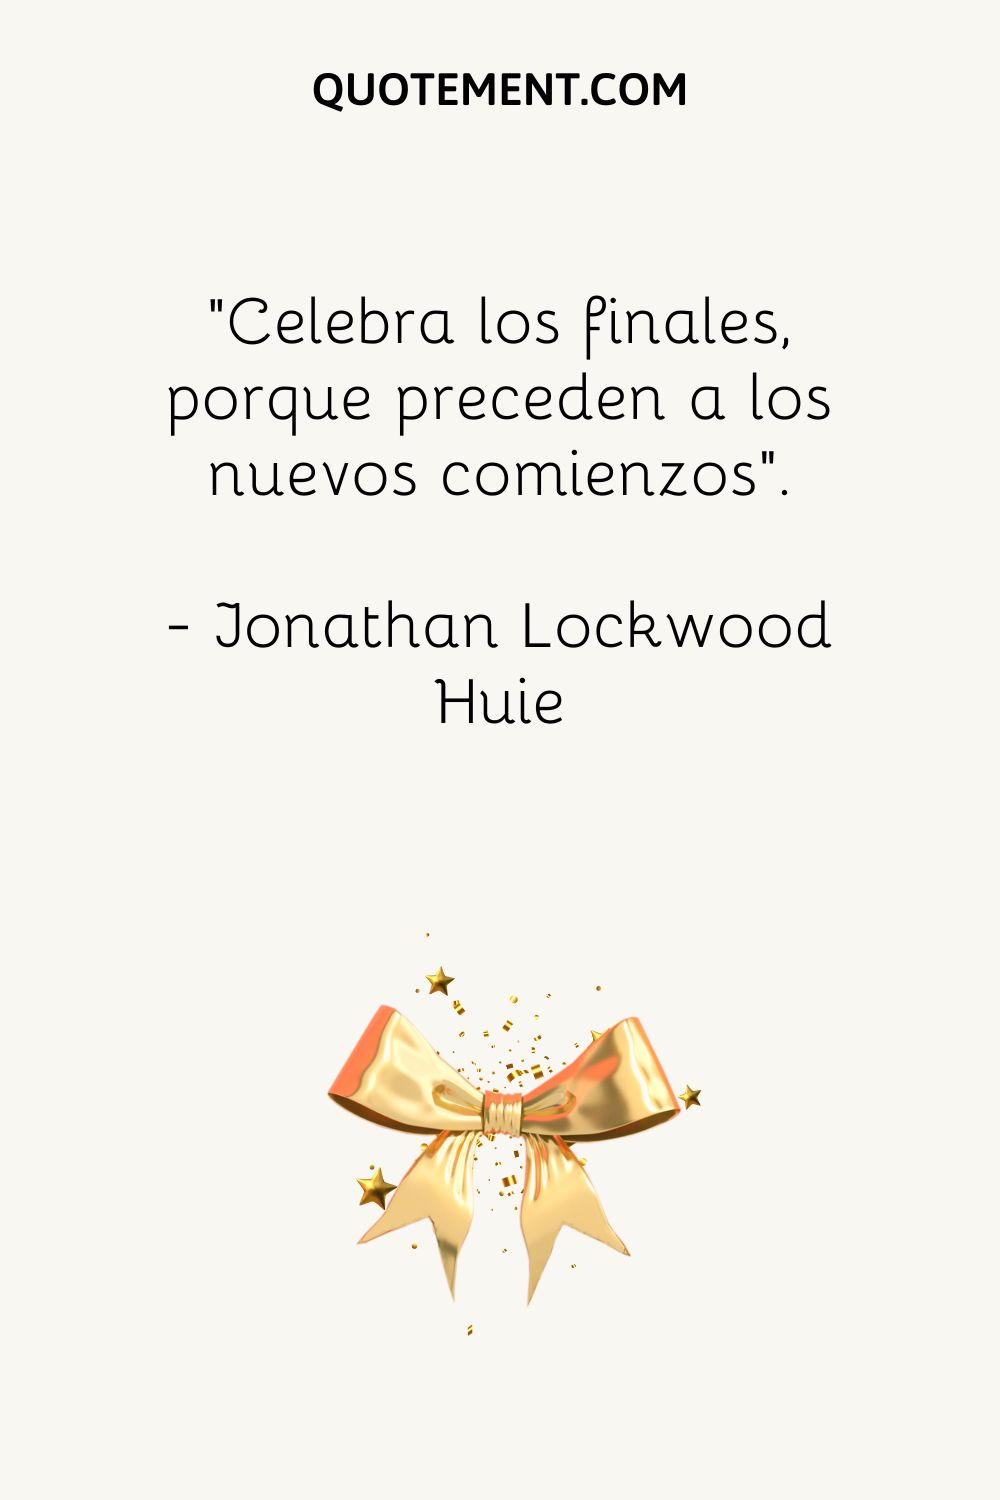 "Celebra los finales, porque preceden a los nuevos comienzos". - Jonathan Lockwood Huie